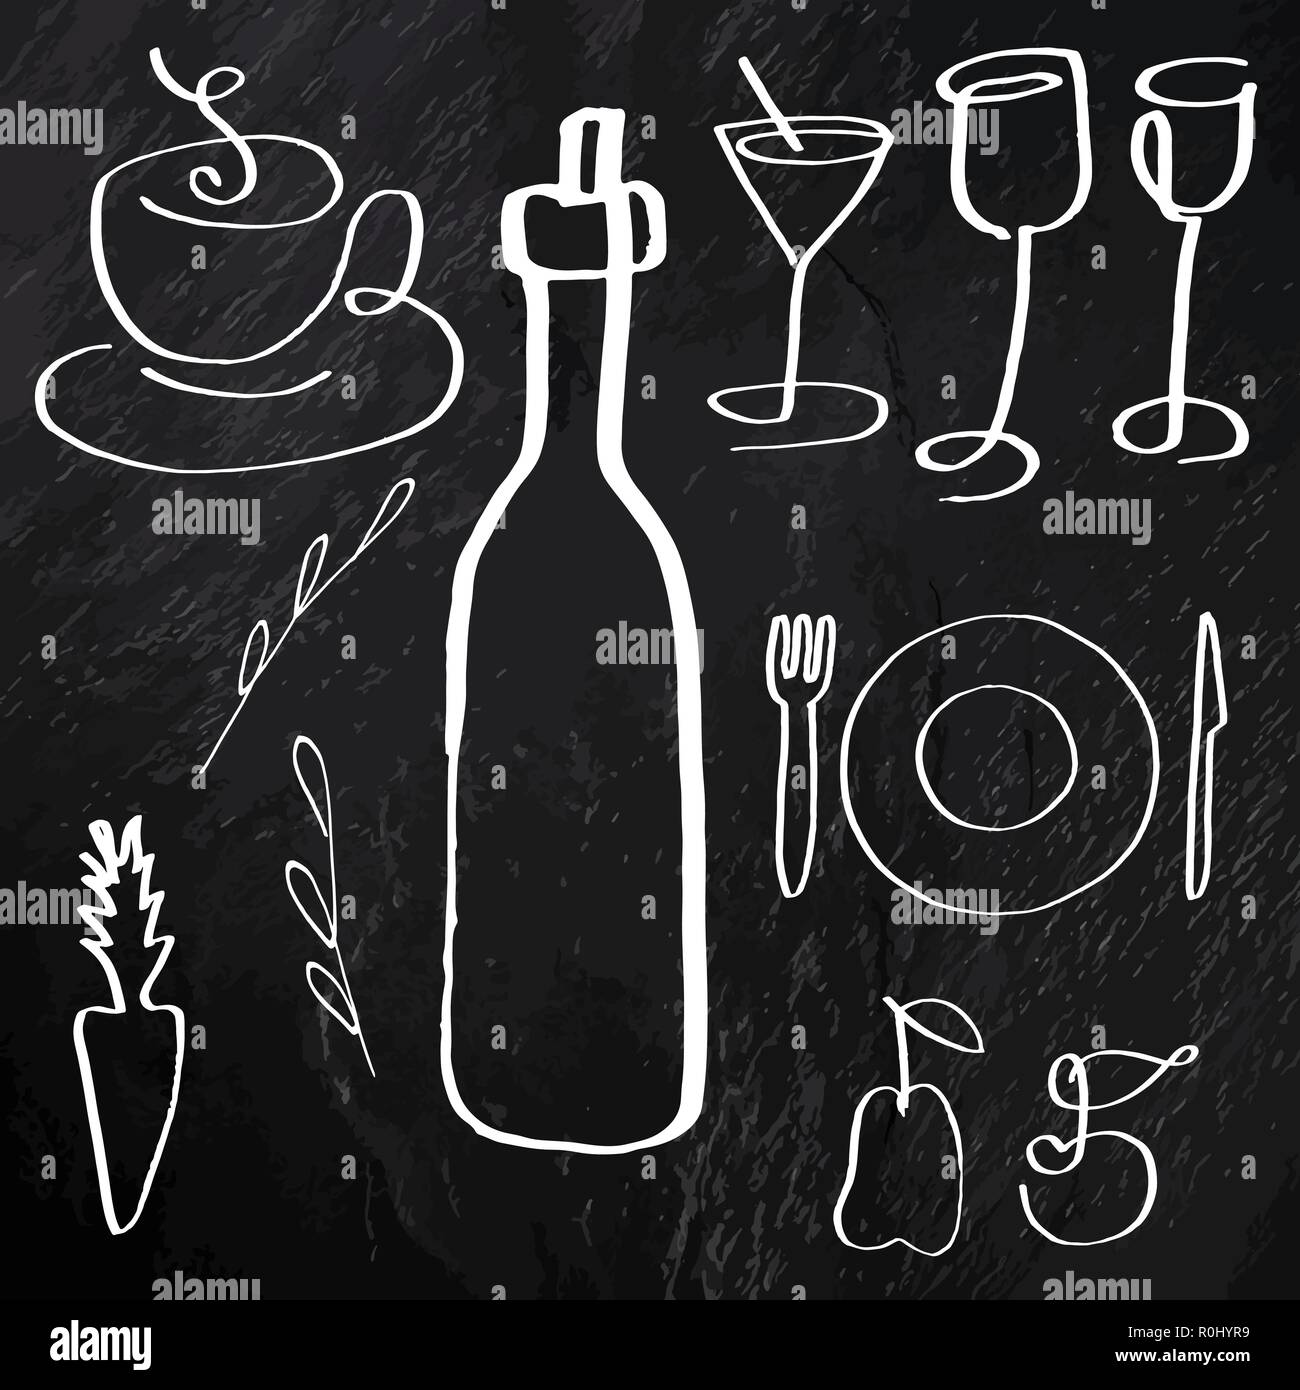 Bạn đang tìm kiếm những hình ảnh thức ăn và đồ uống được vẽ tay tuyệt đẹp để trang trí cho Website của mình? Không cần phải tìm kiếm thêm nữa, vì chúng tôi cung cấp các vector hình ảnh này để bạn có thể sử dụng một cách đơn giản và tiện lợi. 